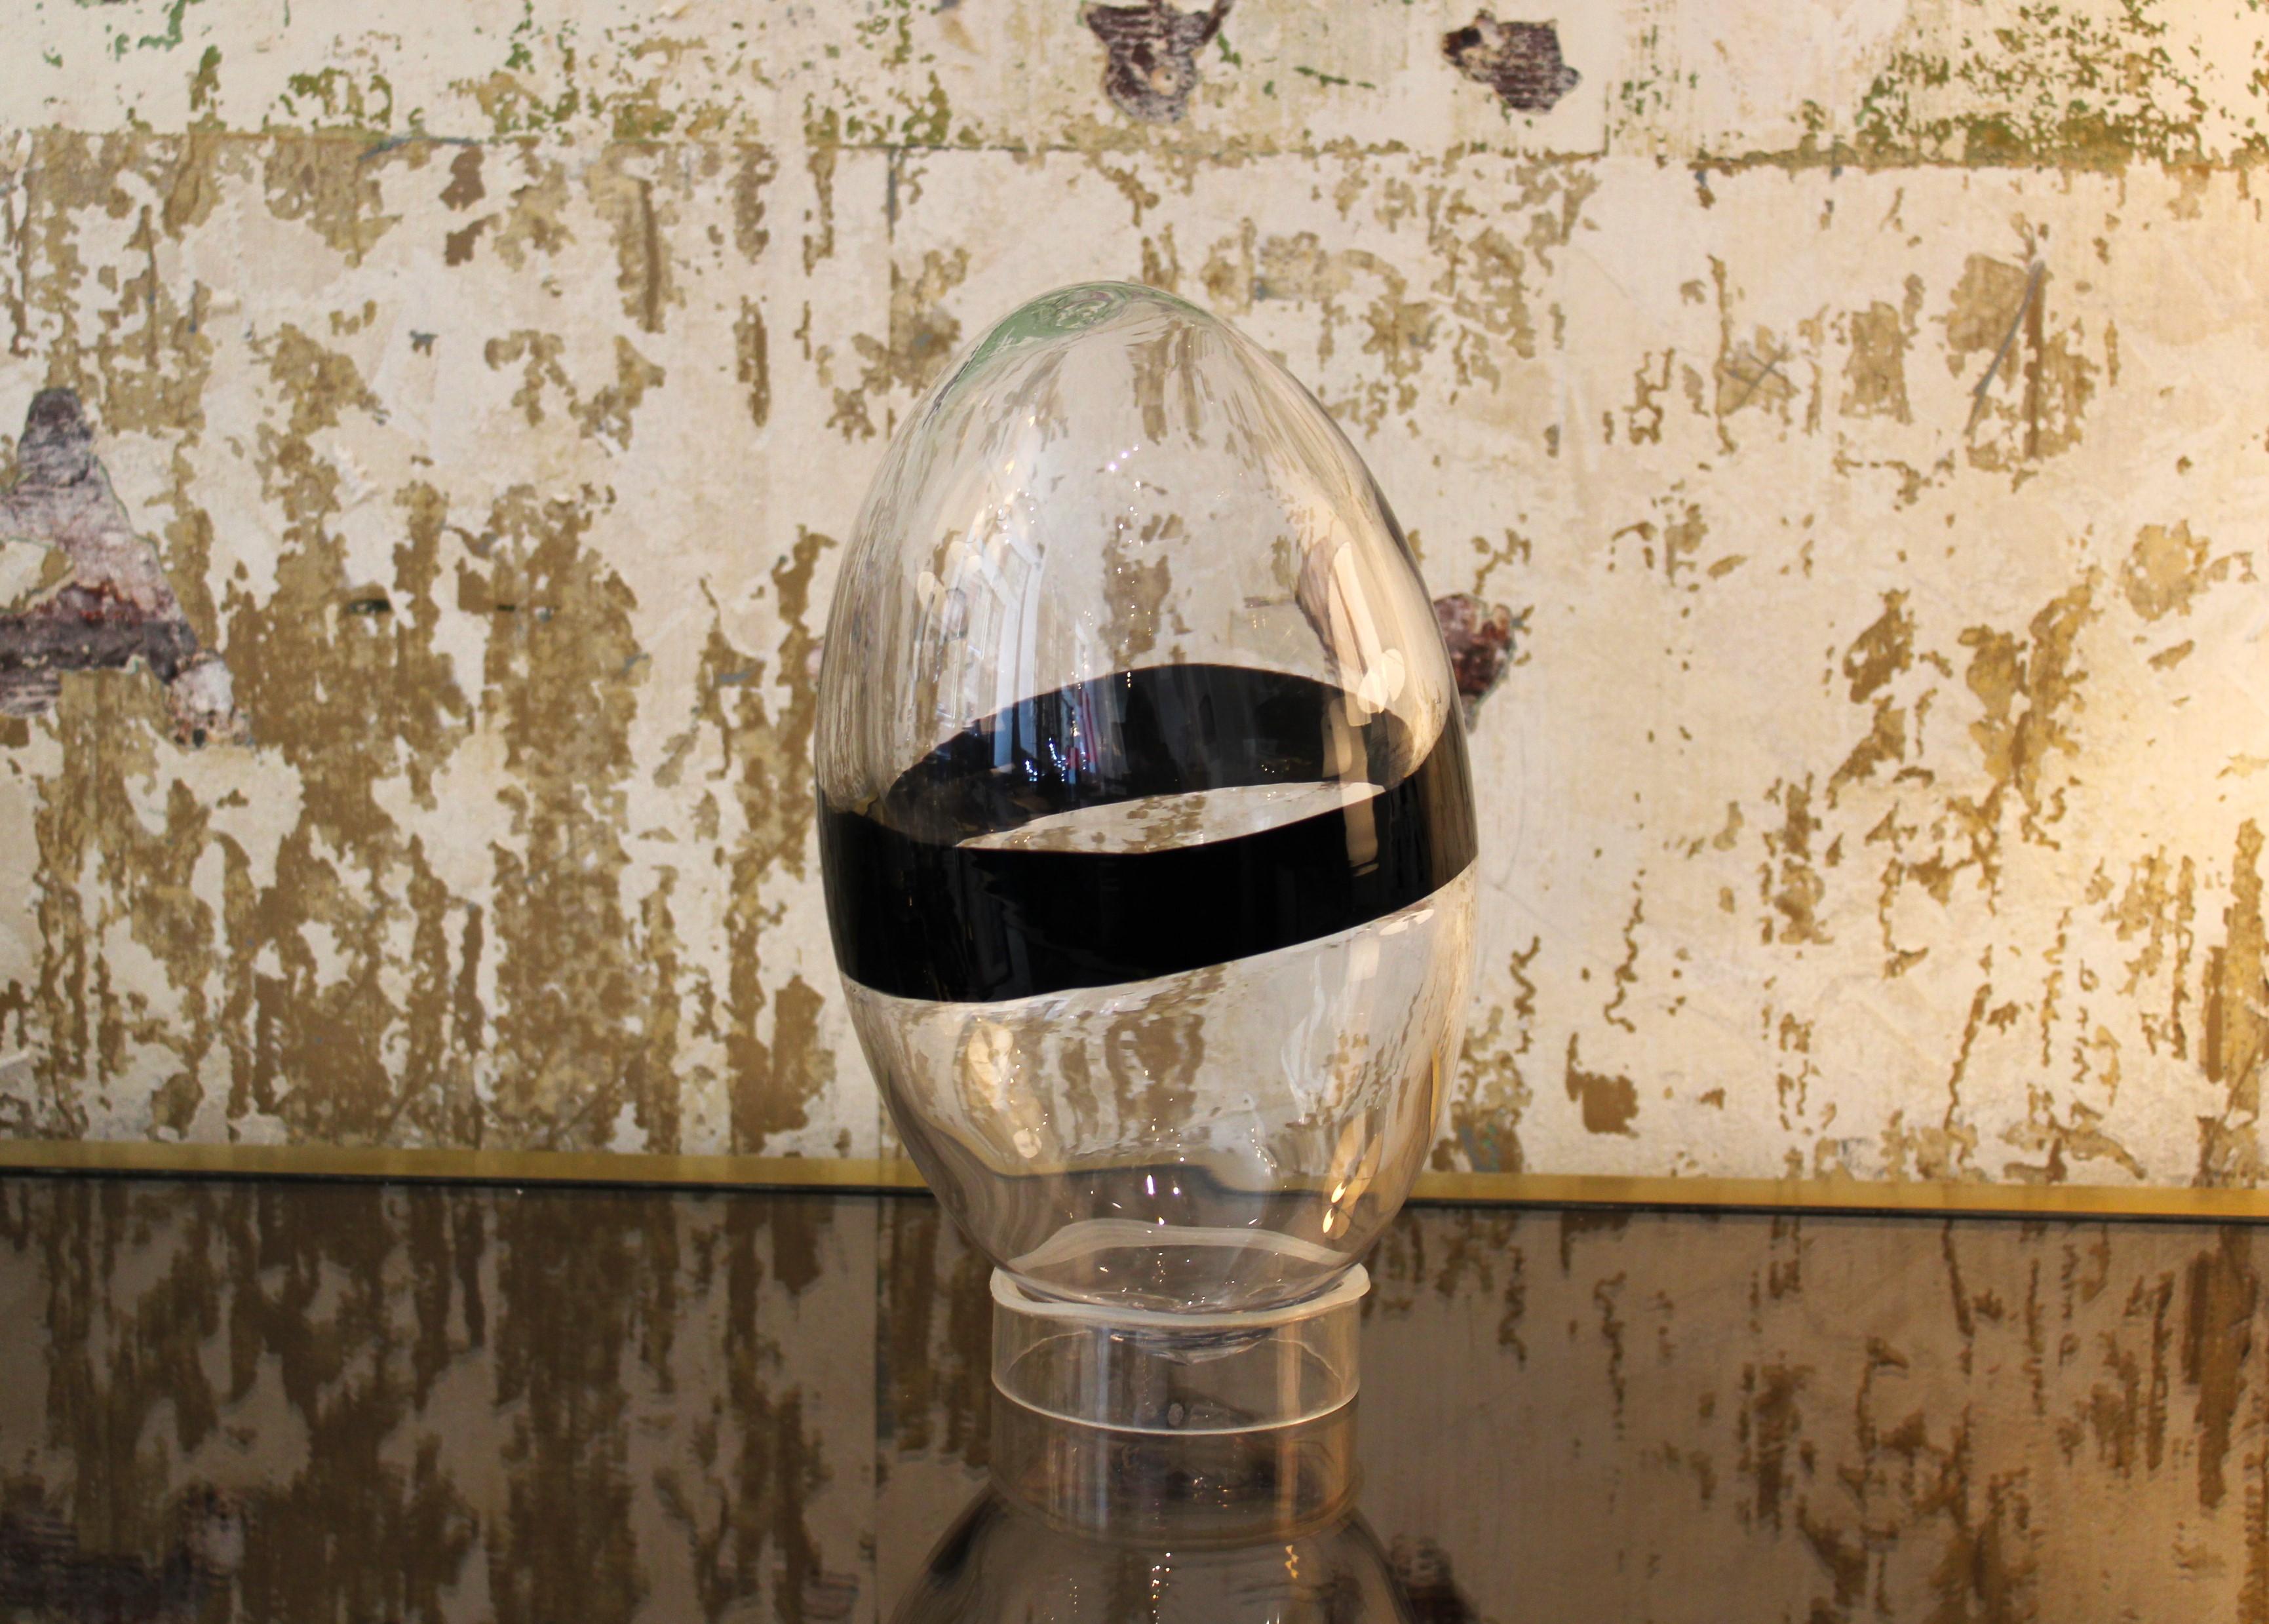 Venini Egg by Ludovico Diaz de Santillana (Anna Venini's husband, daugther of Paolo Venini) for Pierre Cardin
Murano glass and plexiglass base
1960s, Italy
